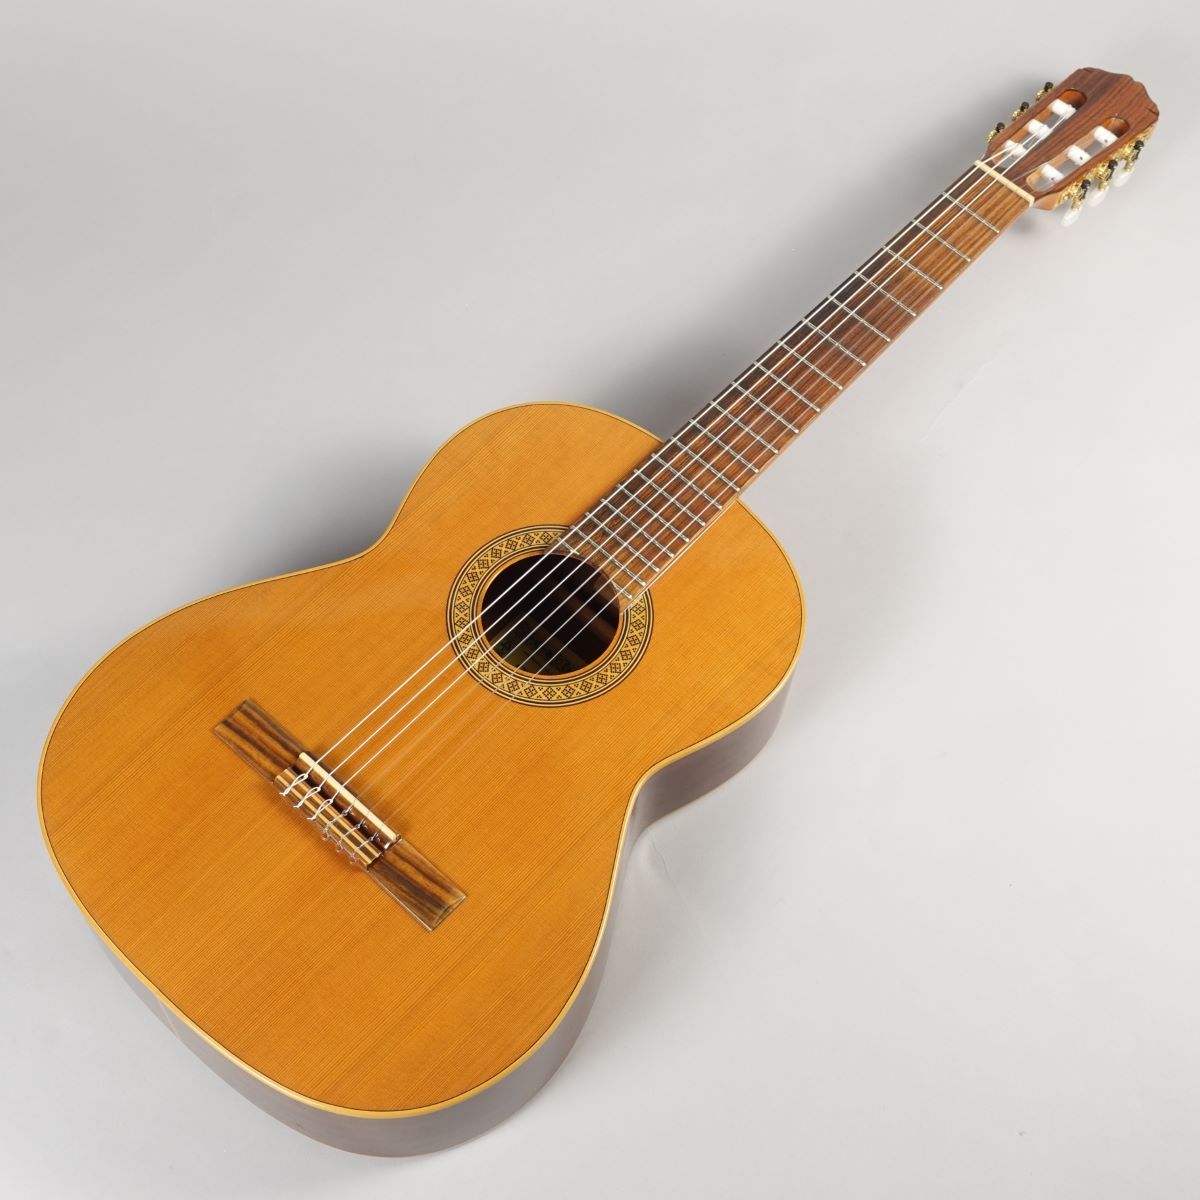 スペイン製 クラシックギター ハードケース付き www.krzysztofbialy.com